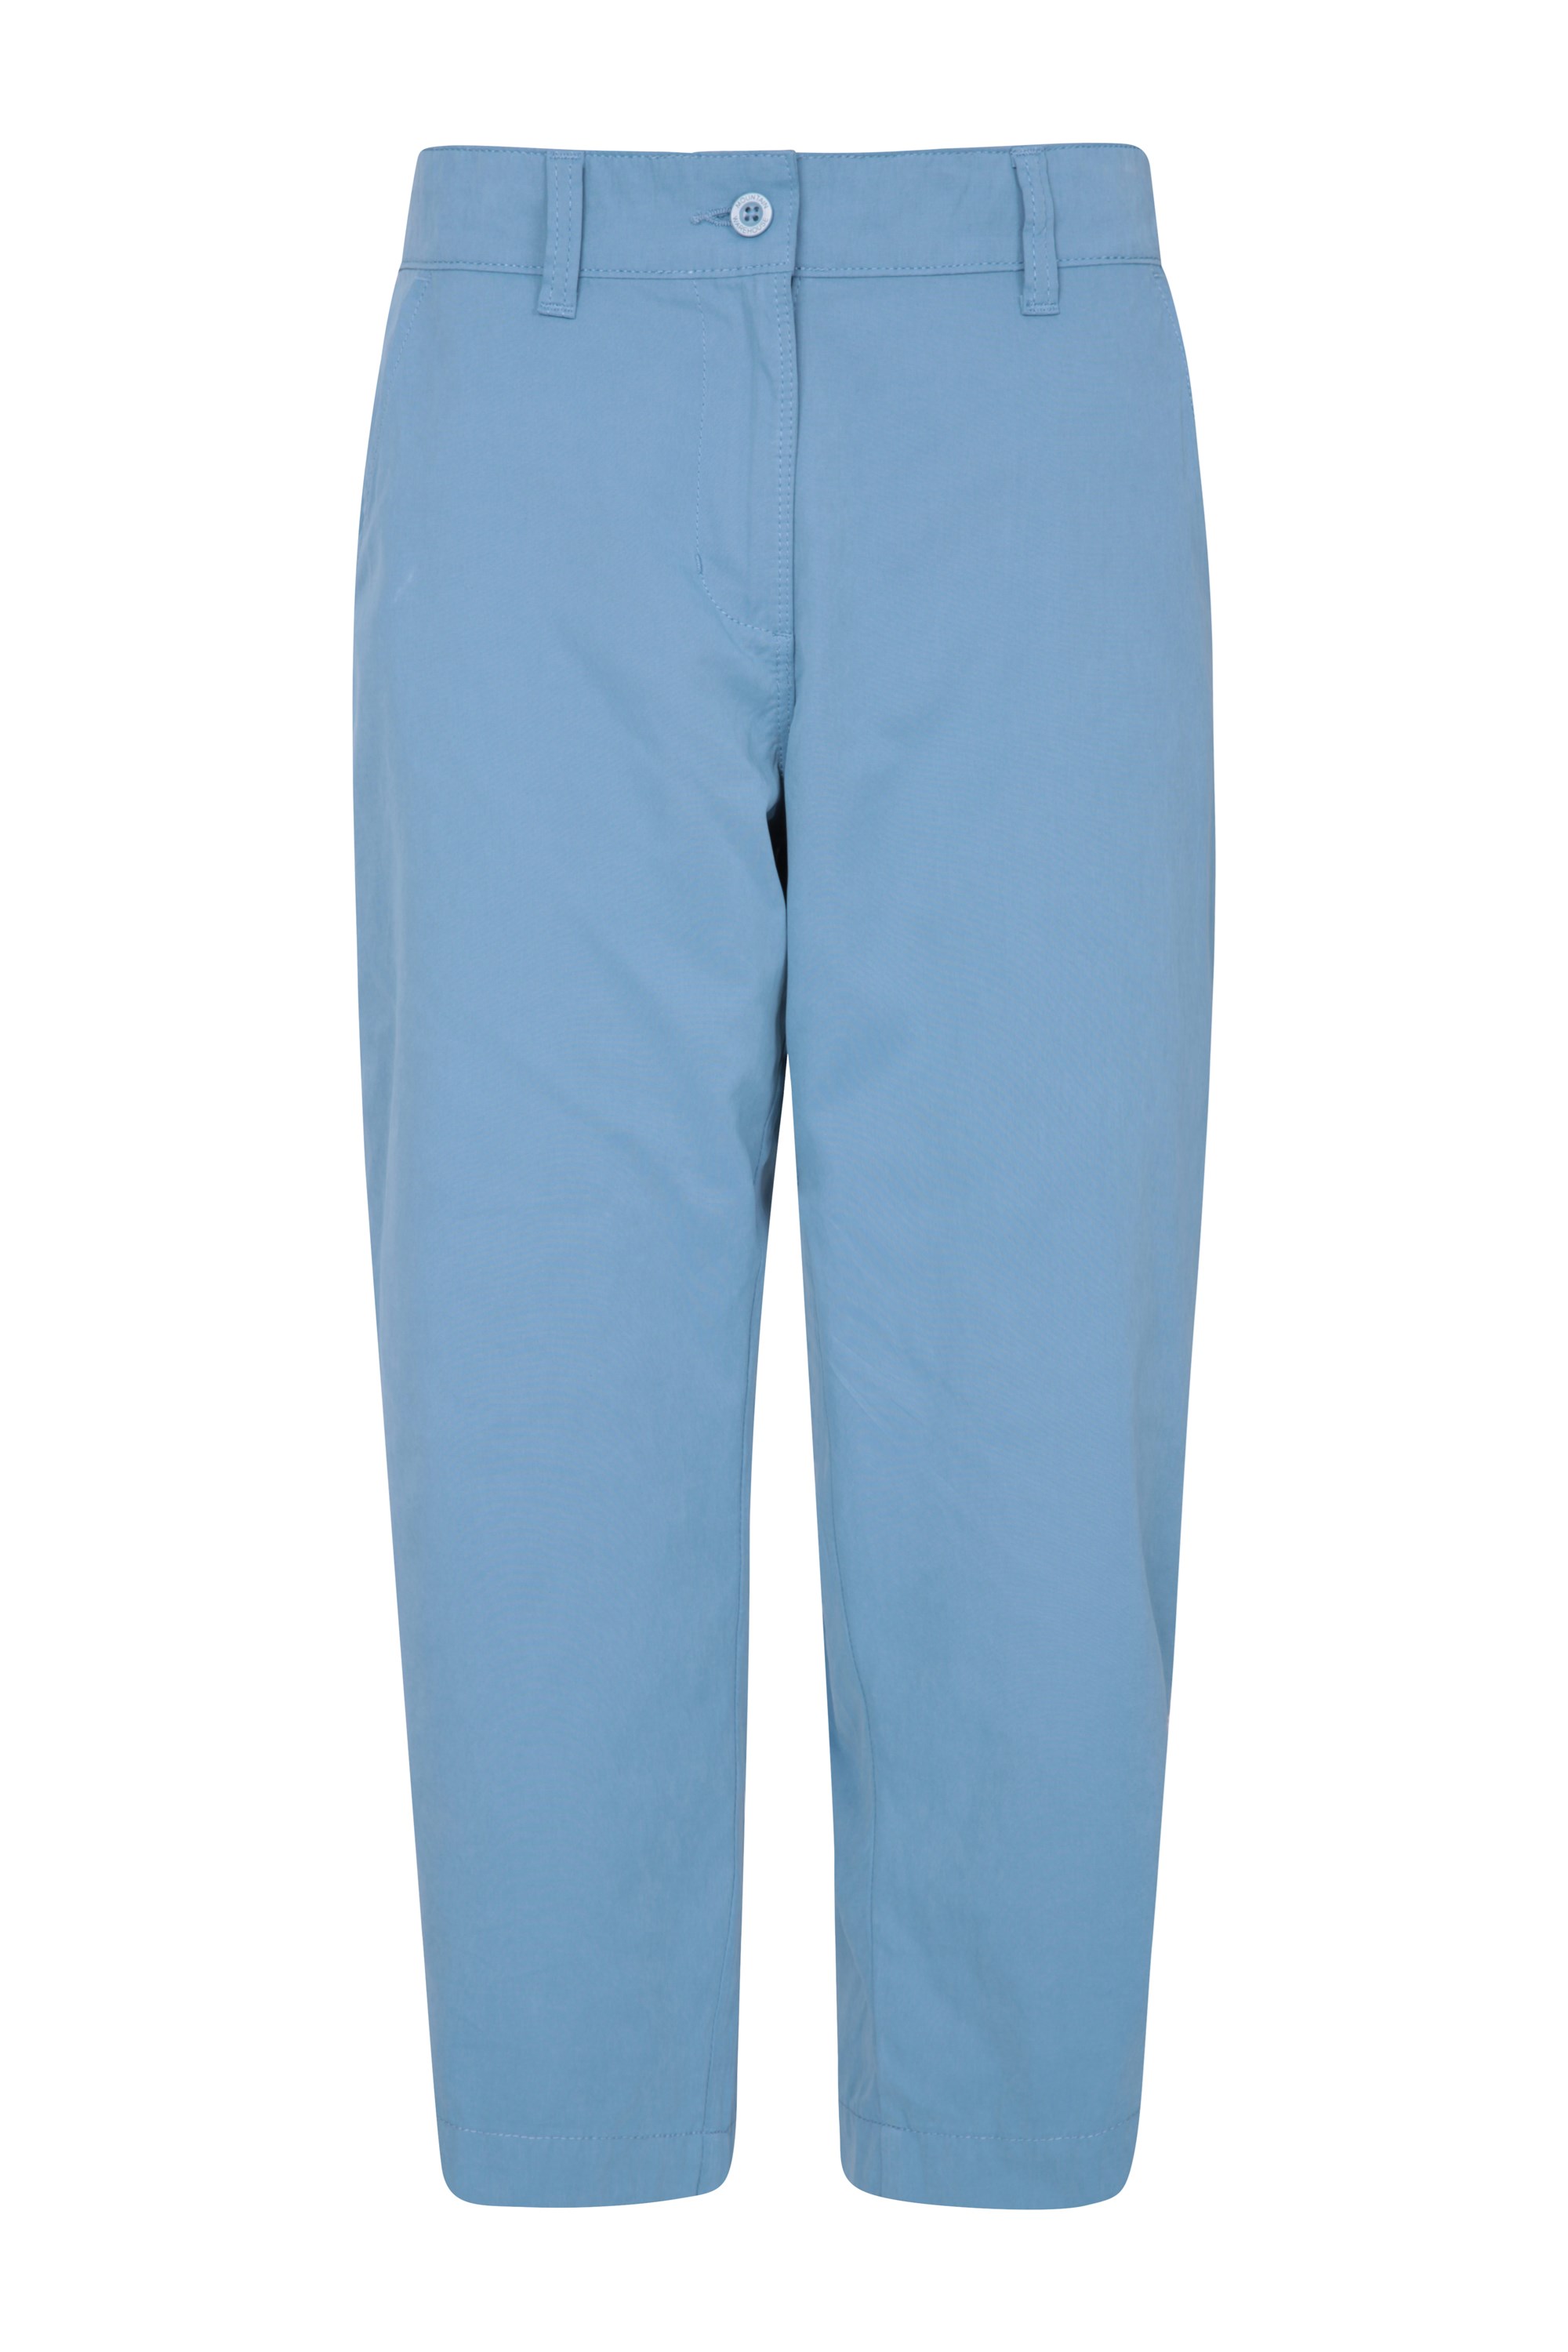 blue capri trousers